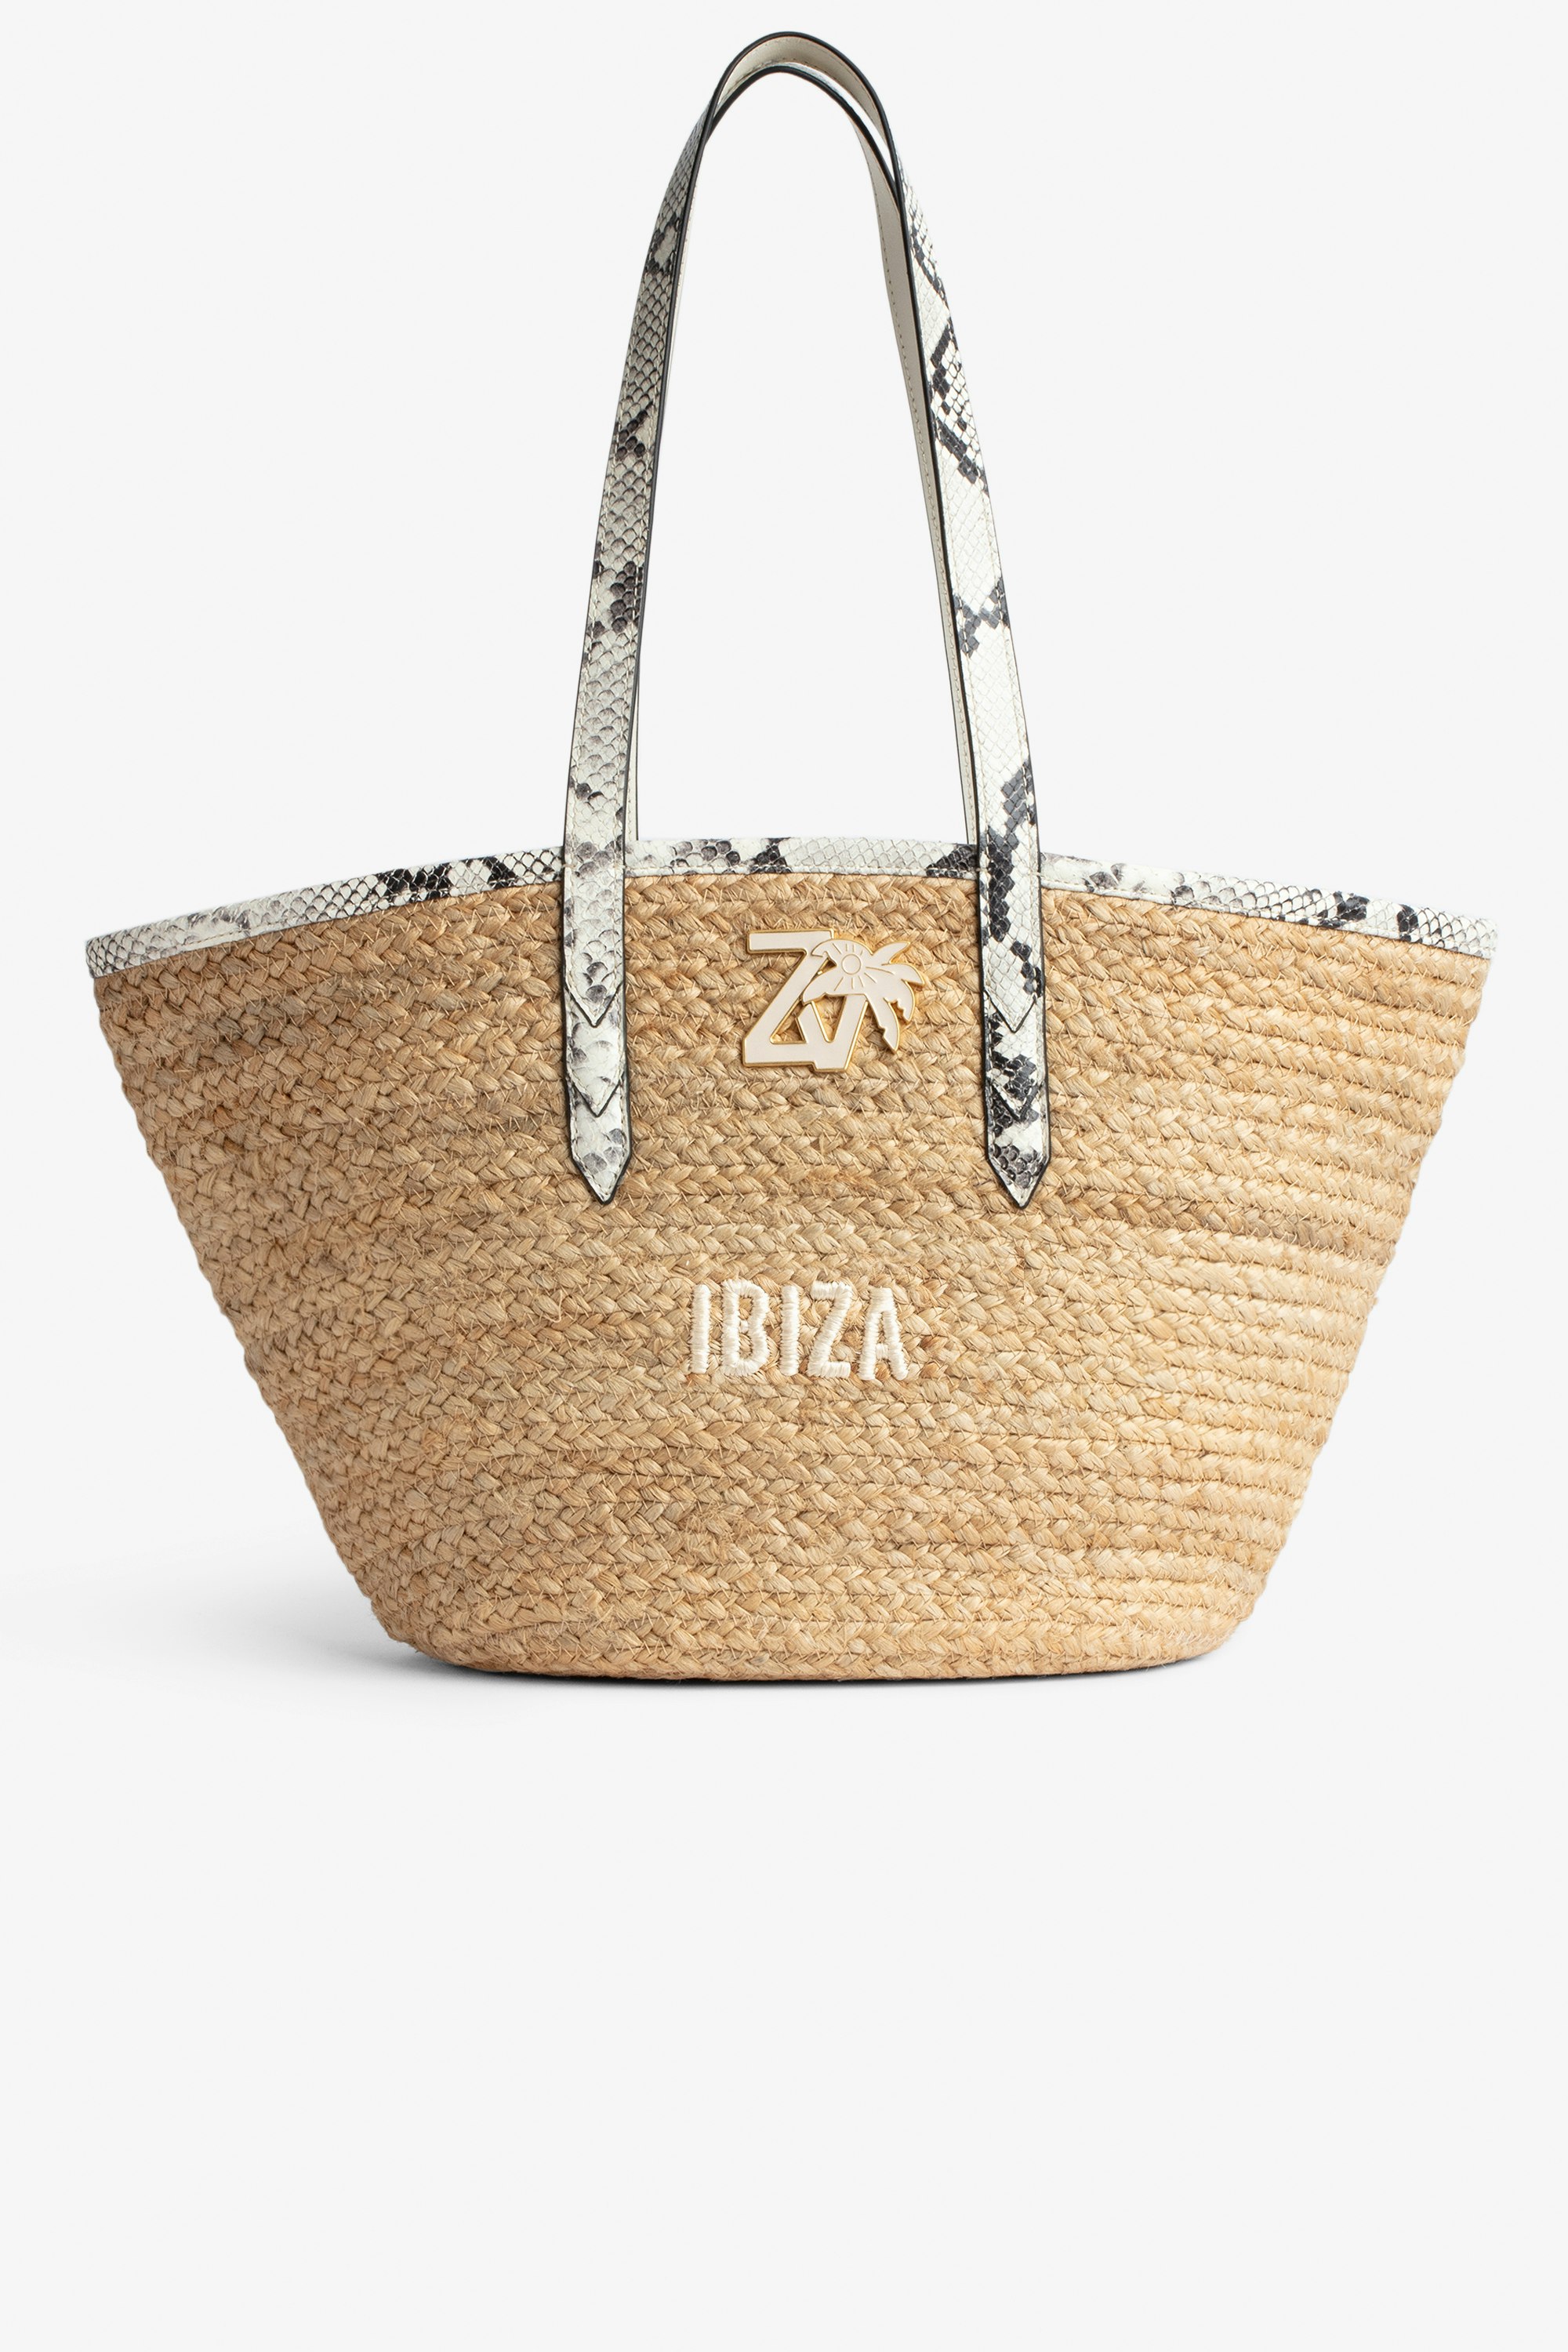 Tasche Le Beach Bag - Damen-Strohtasche mit Henkeln aus ecrufarbenem Leder in Python-Optik, „Ibiza“-Stickerei und ZV-Charm